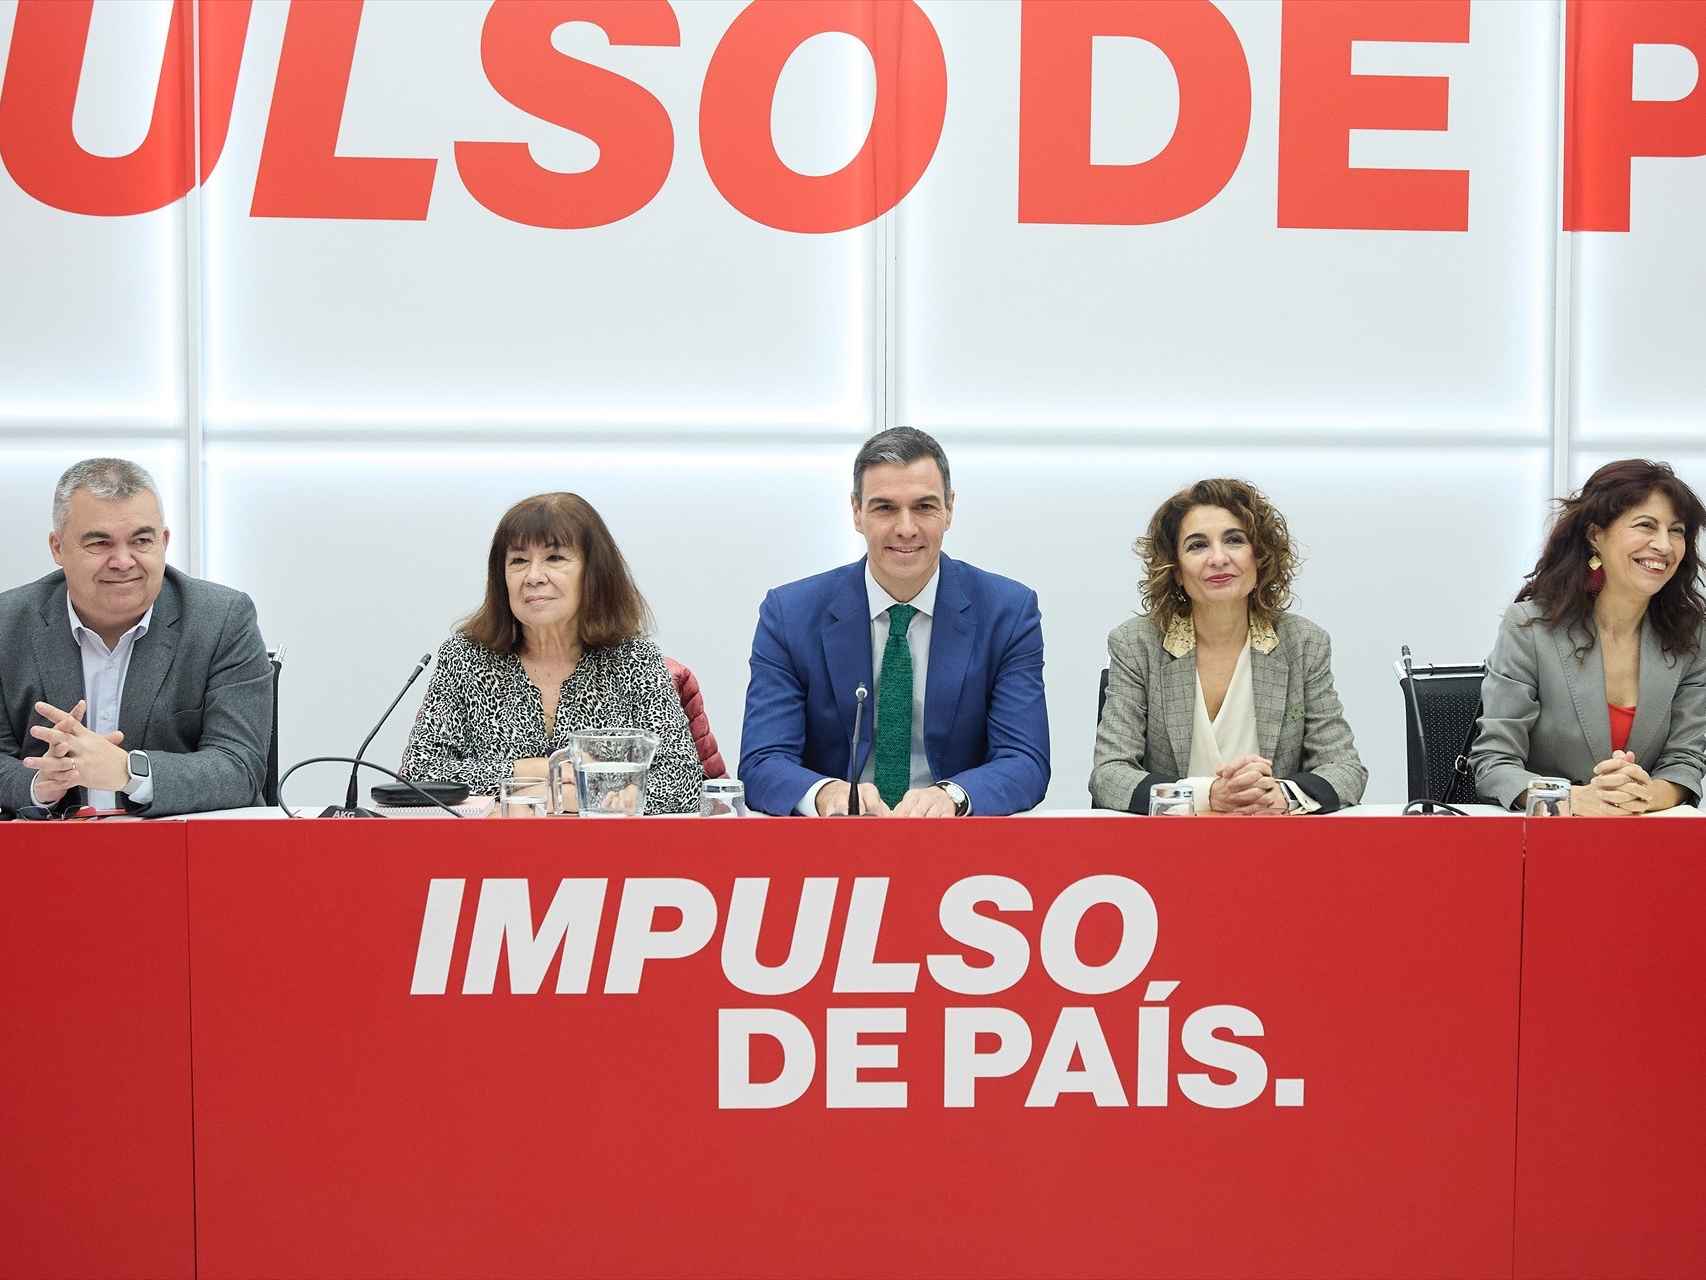 Pedro Sánchez y otros líderes del PSOE en la Comisión Ejecutiva Federal del PSOE.